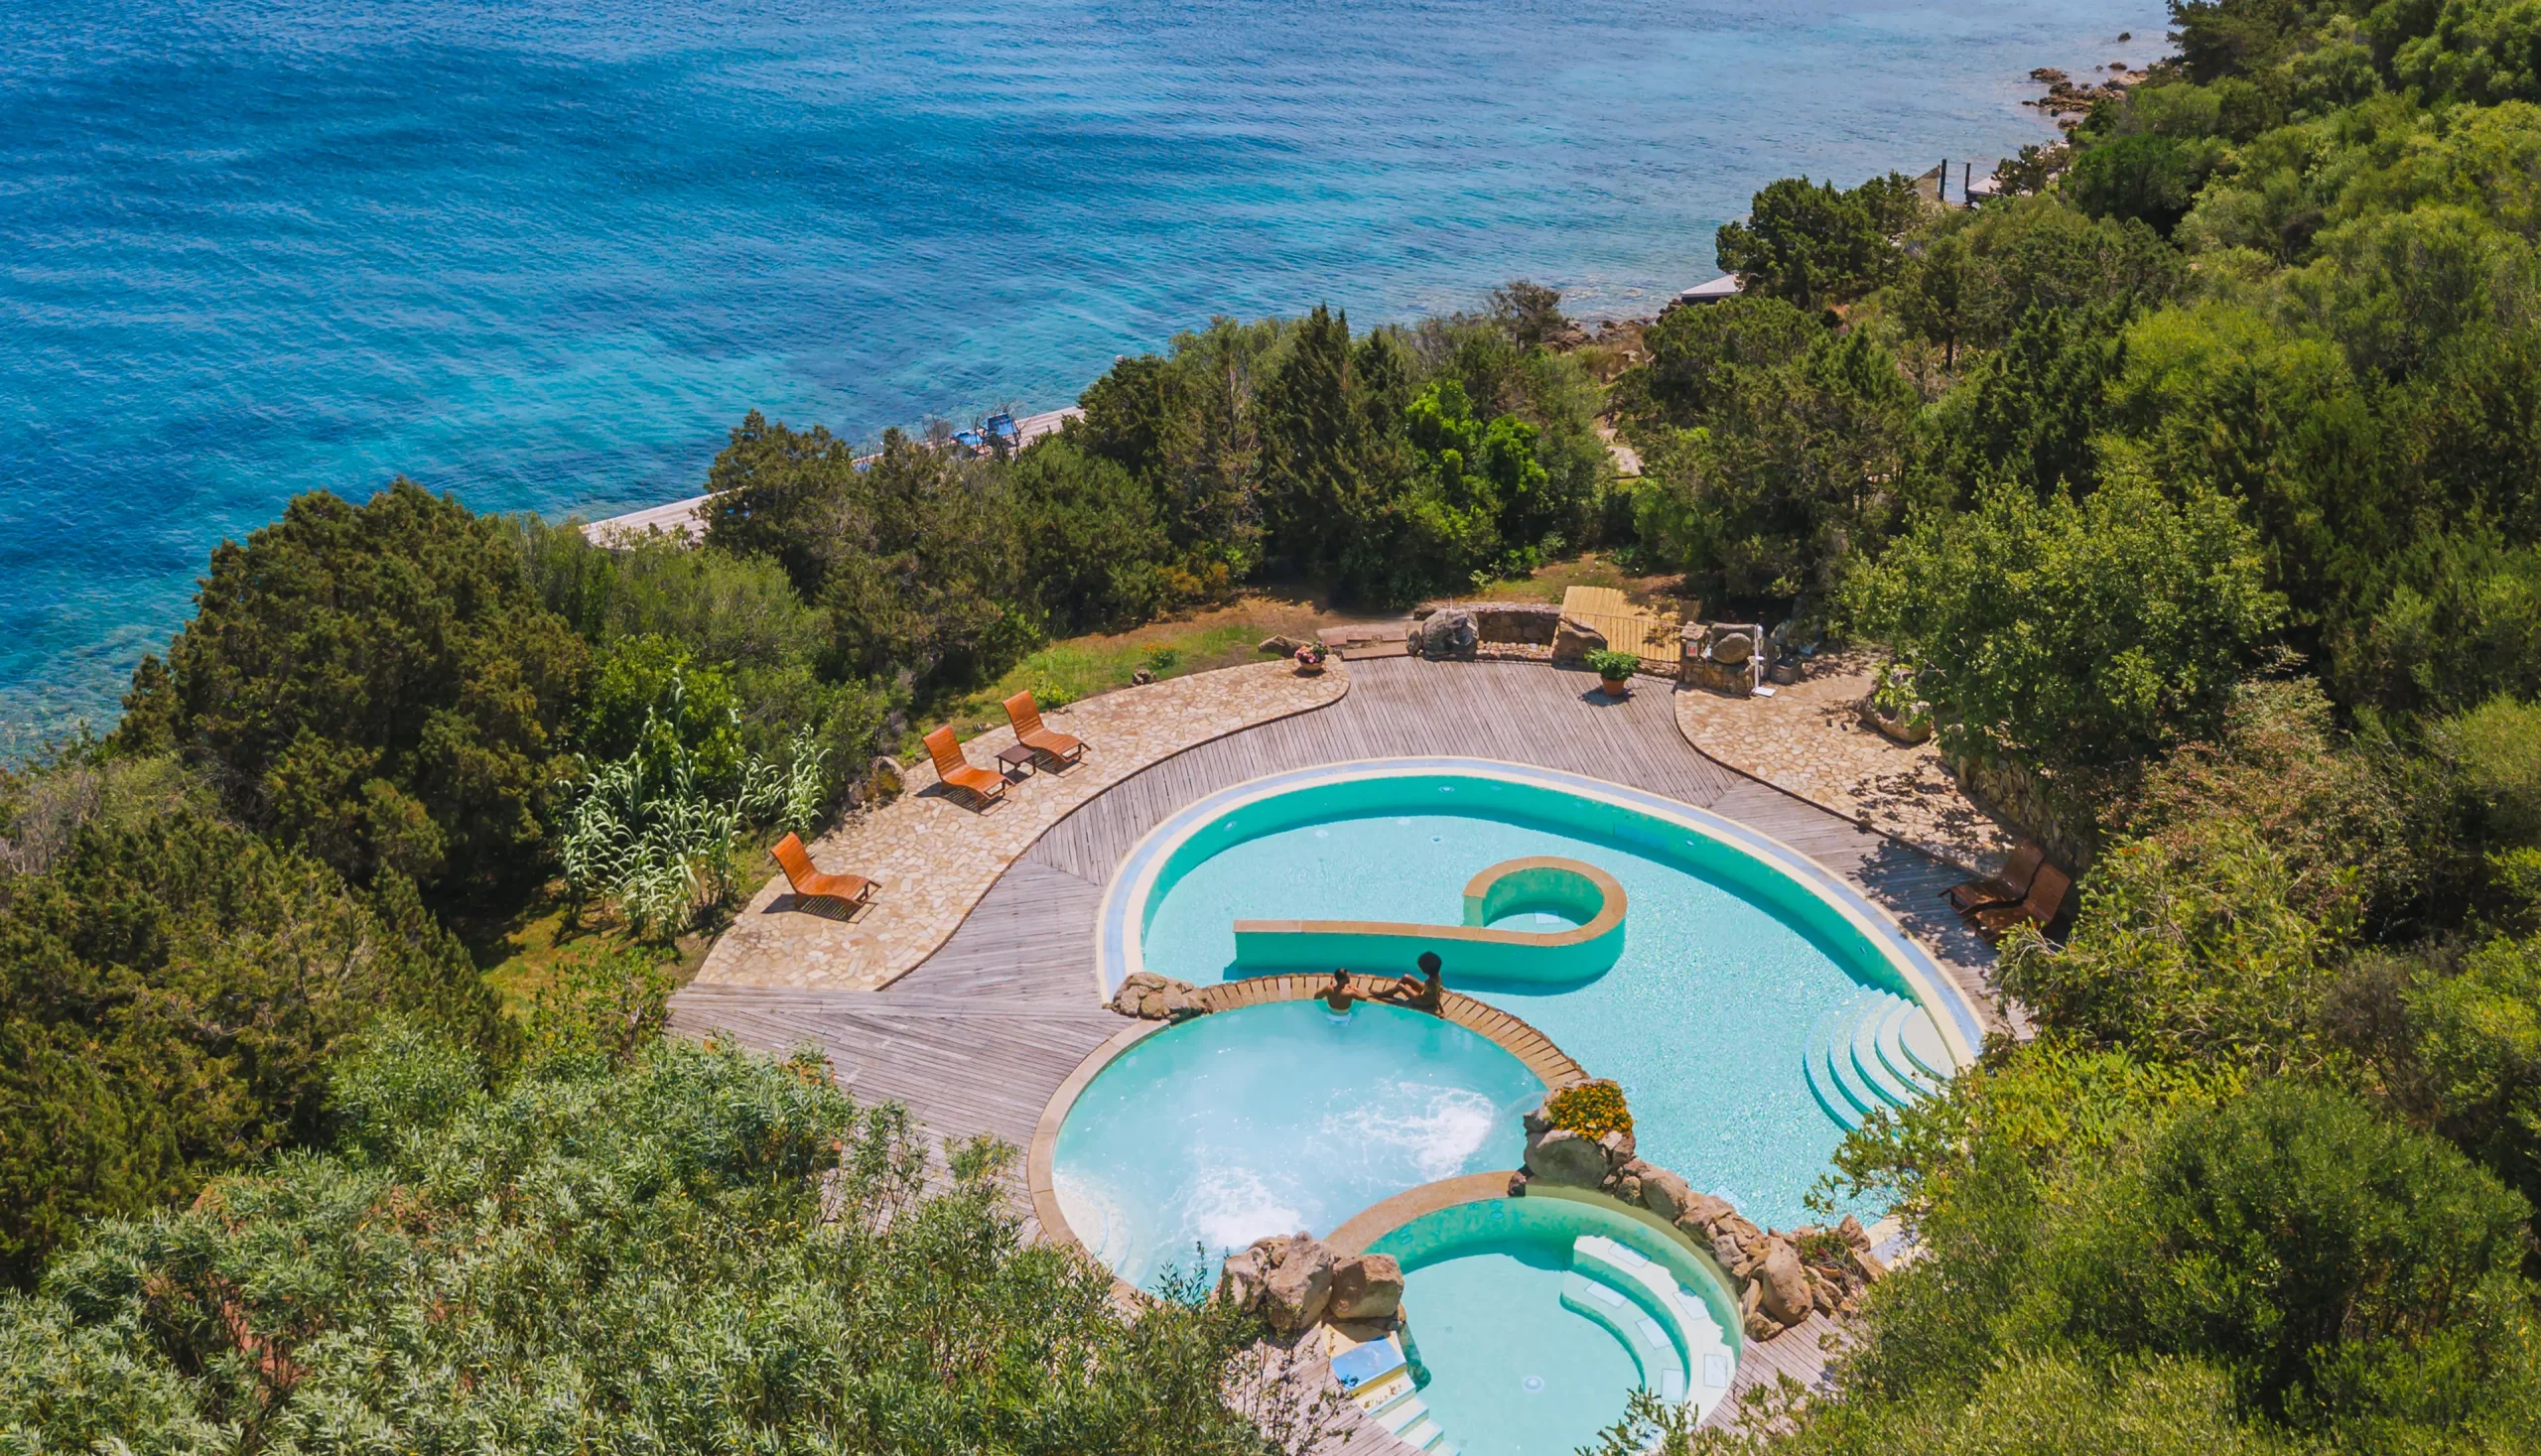 Hotel Capo d'Orso - Spa piscine